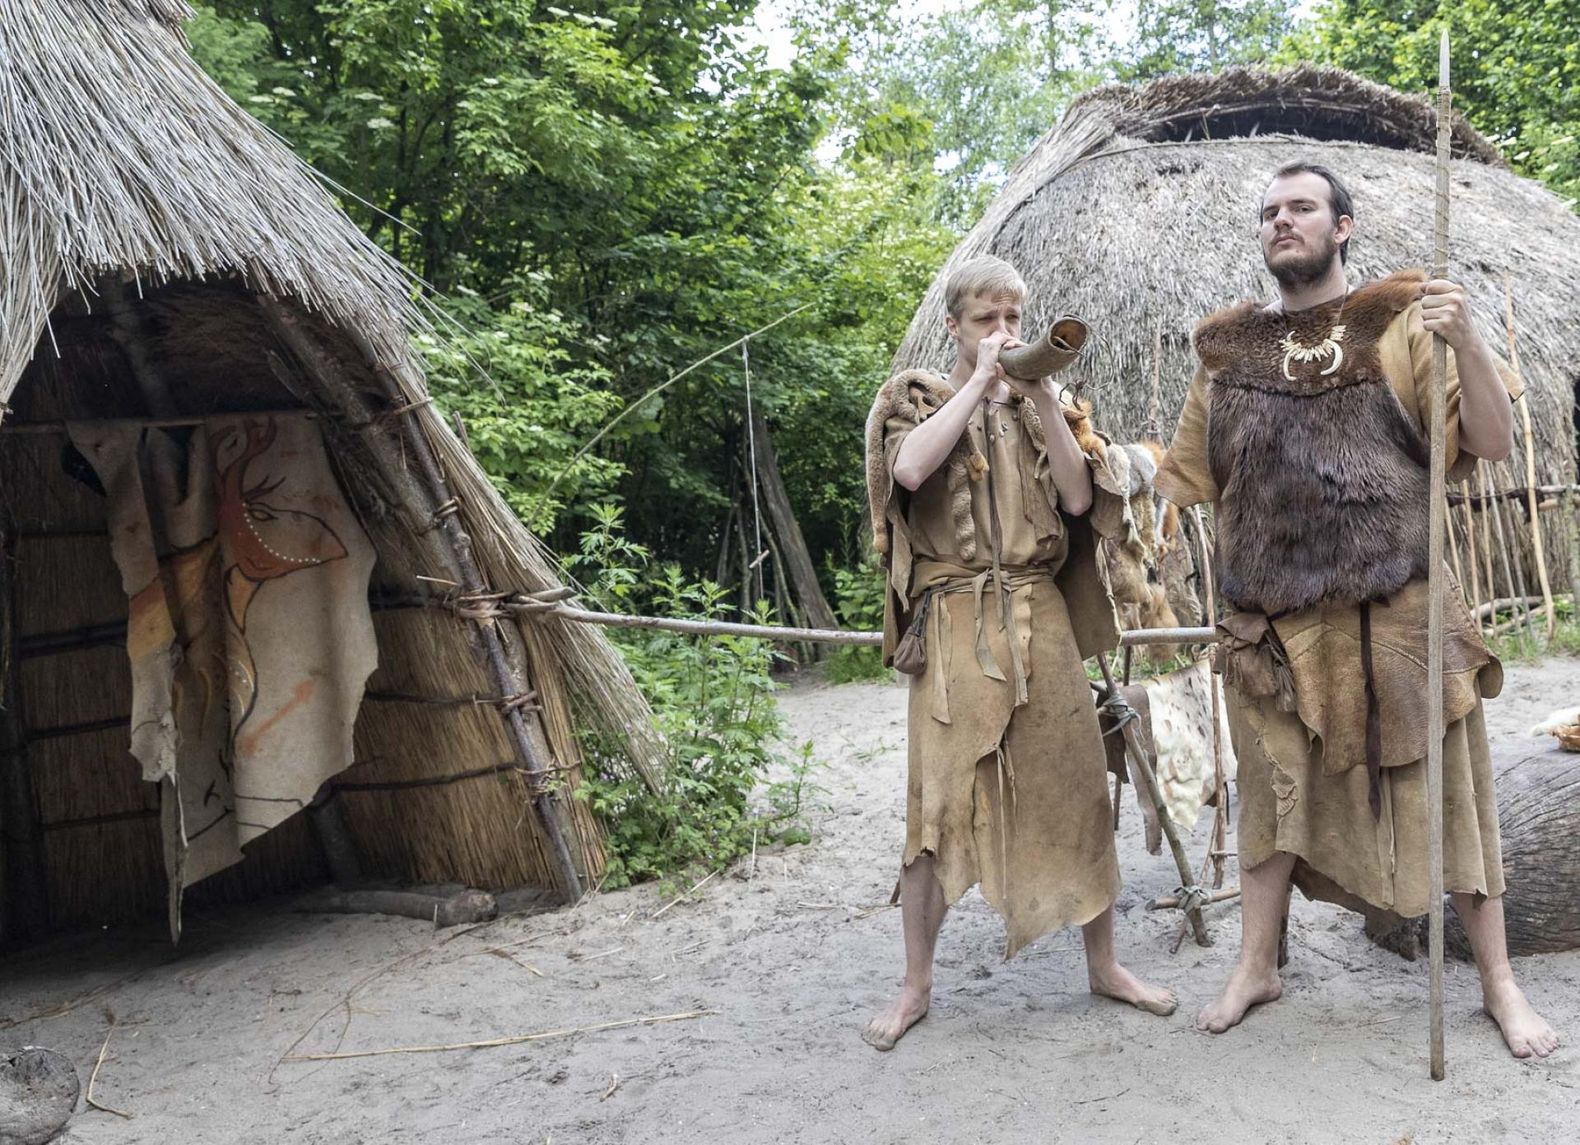 Twee mannen in prehistorisch klederdracht voor twee rieten hutjes